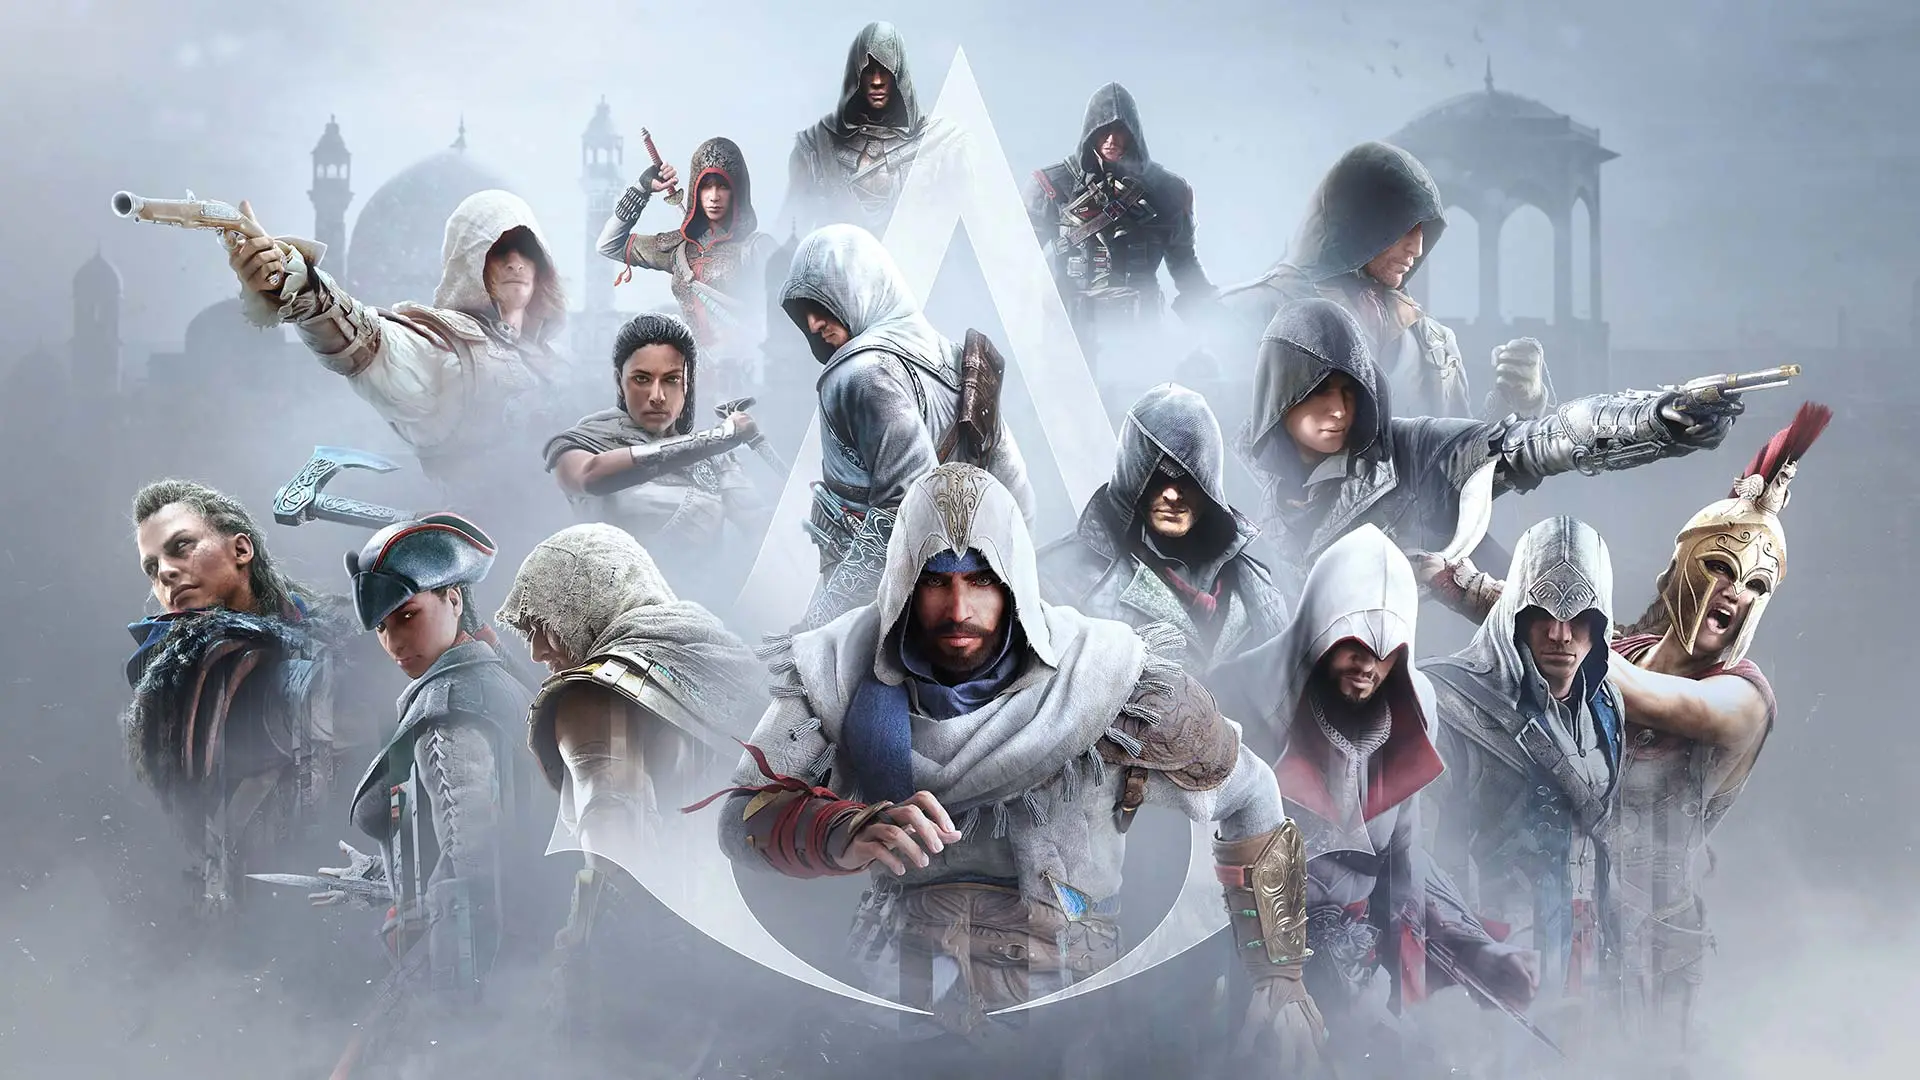 Assassin's Creed: Revelations (2011): All Secret Locations/Hidden